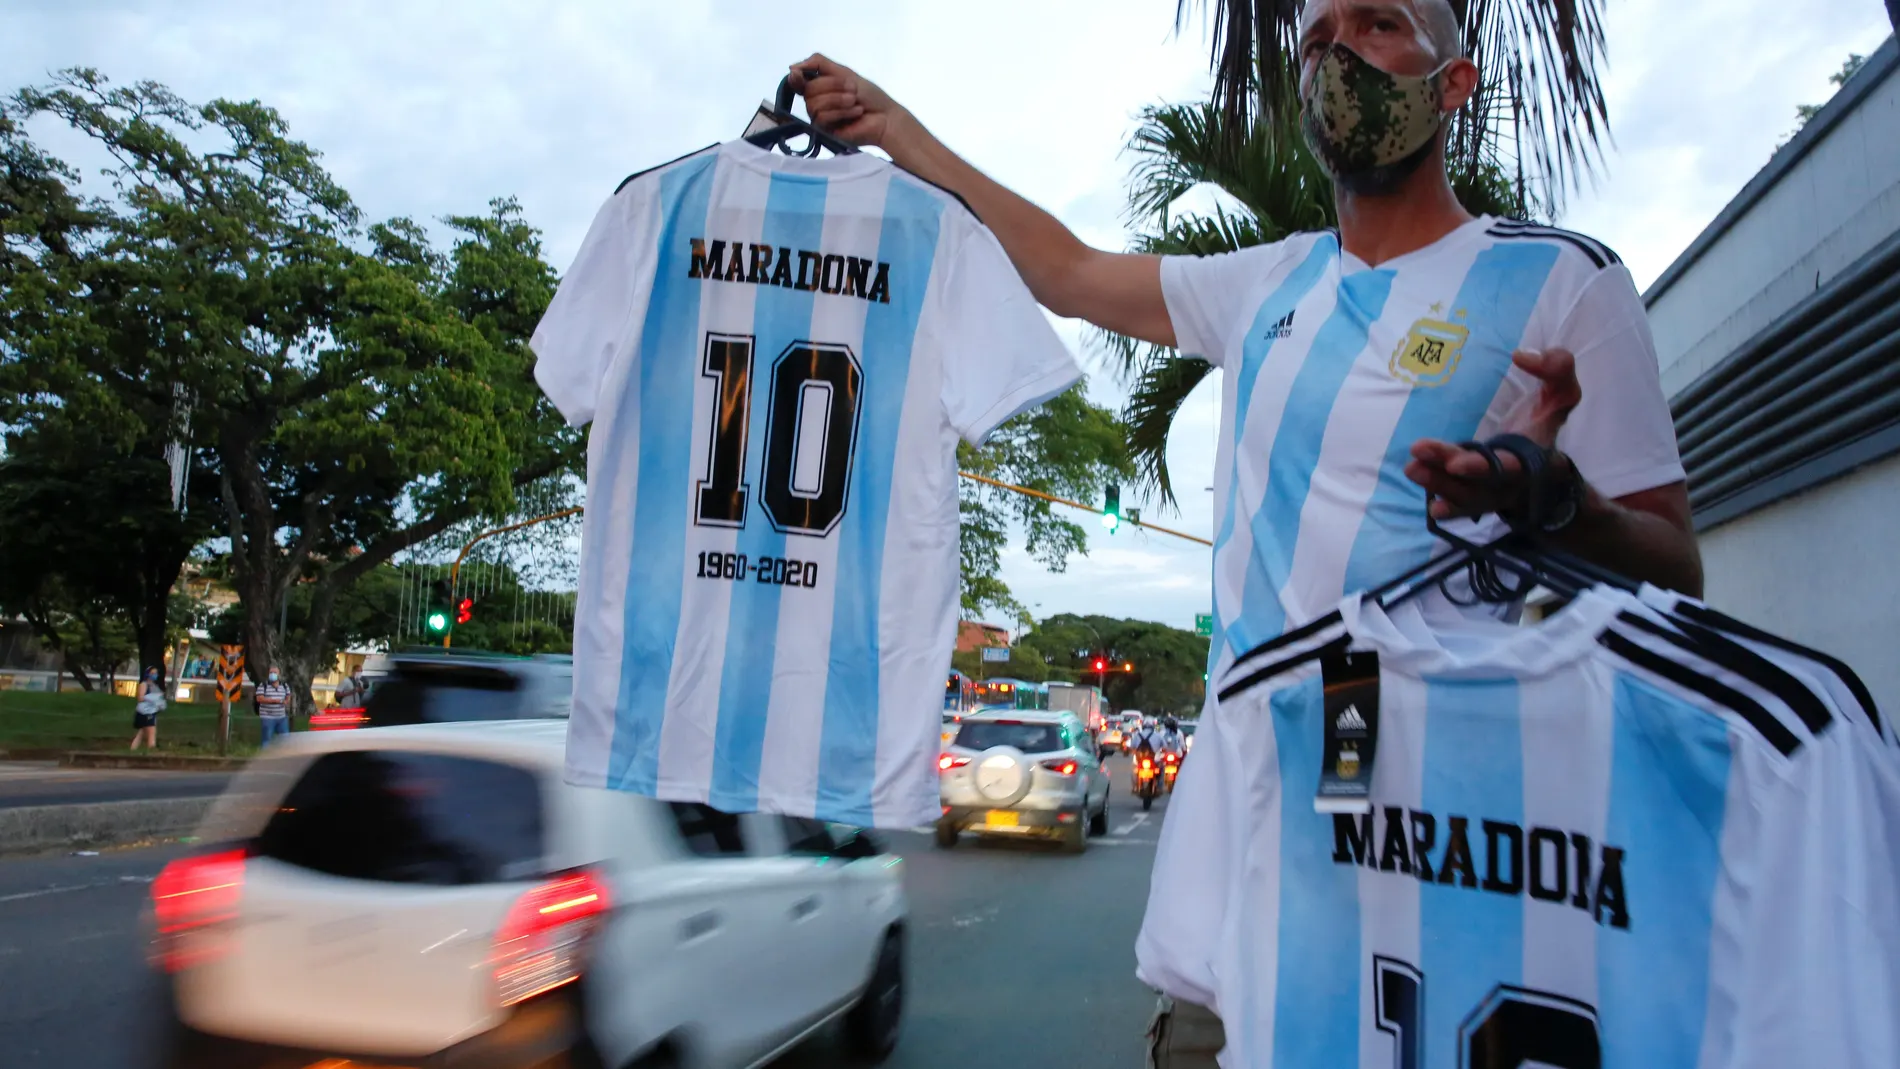 Un hombre vende camisetas del exfutbolista Diego Armando Maradona en una calle, hoy en Cali (Colombia).